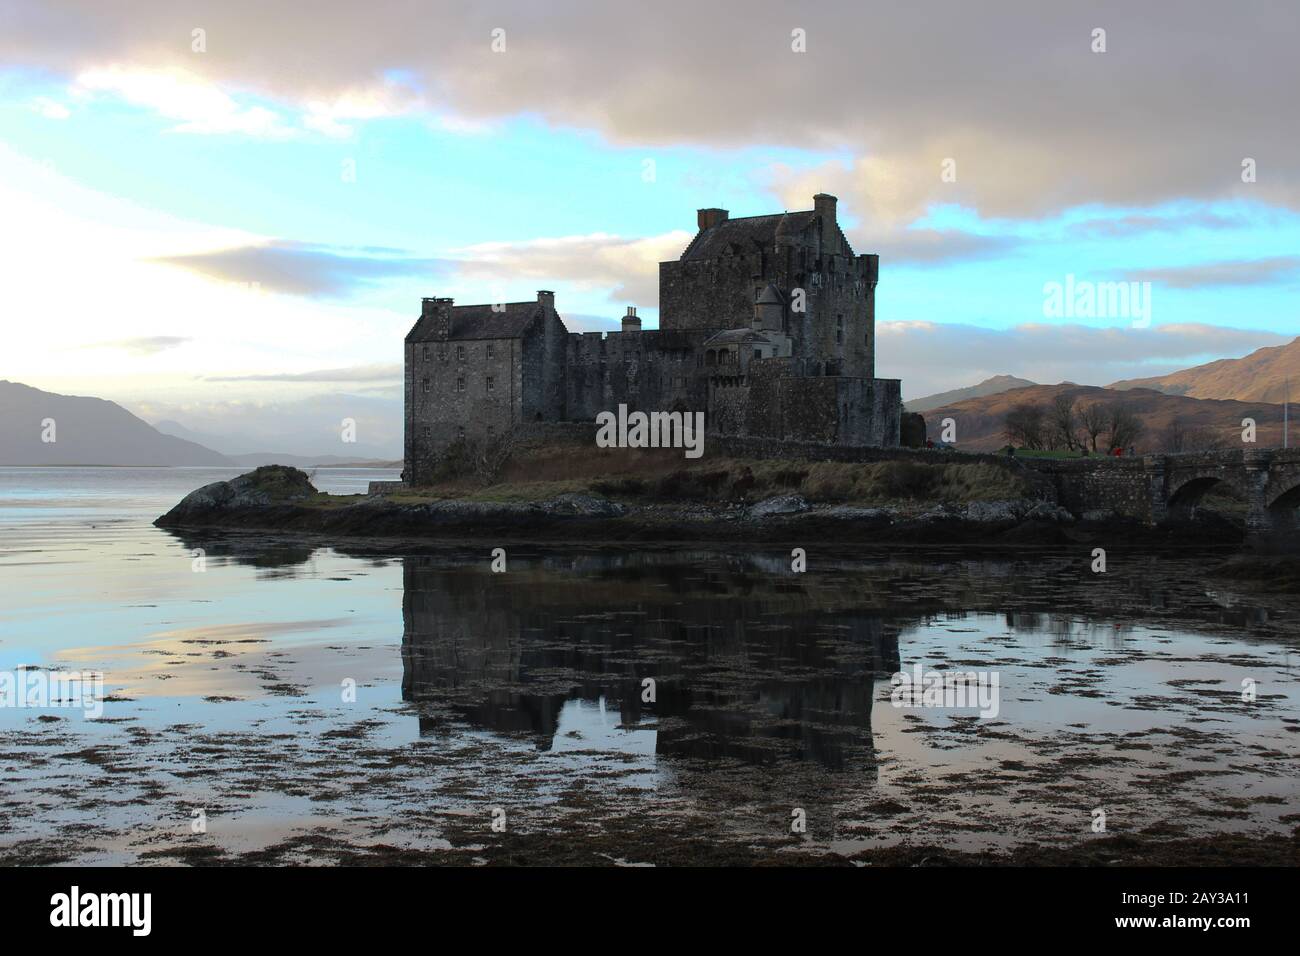 Le superbe château d'Eilan Donan se reflète parfaitement dans les eaux écossaises lors d'une journée encore surpassée avec le soleil qui frappe les collines Banque D'Images